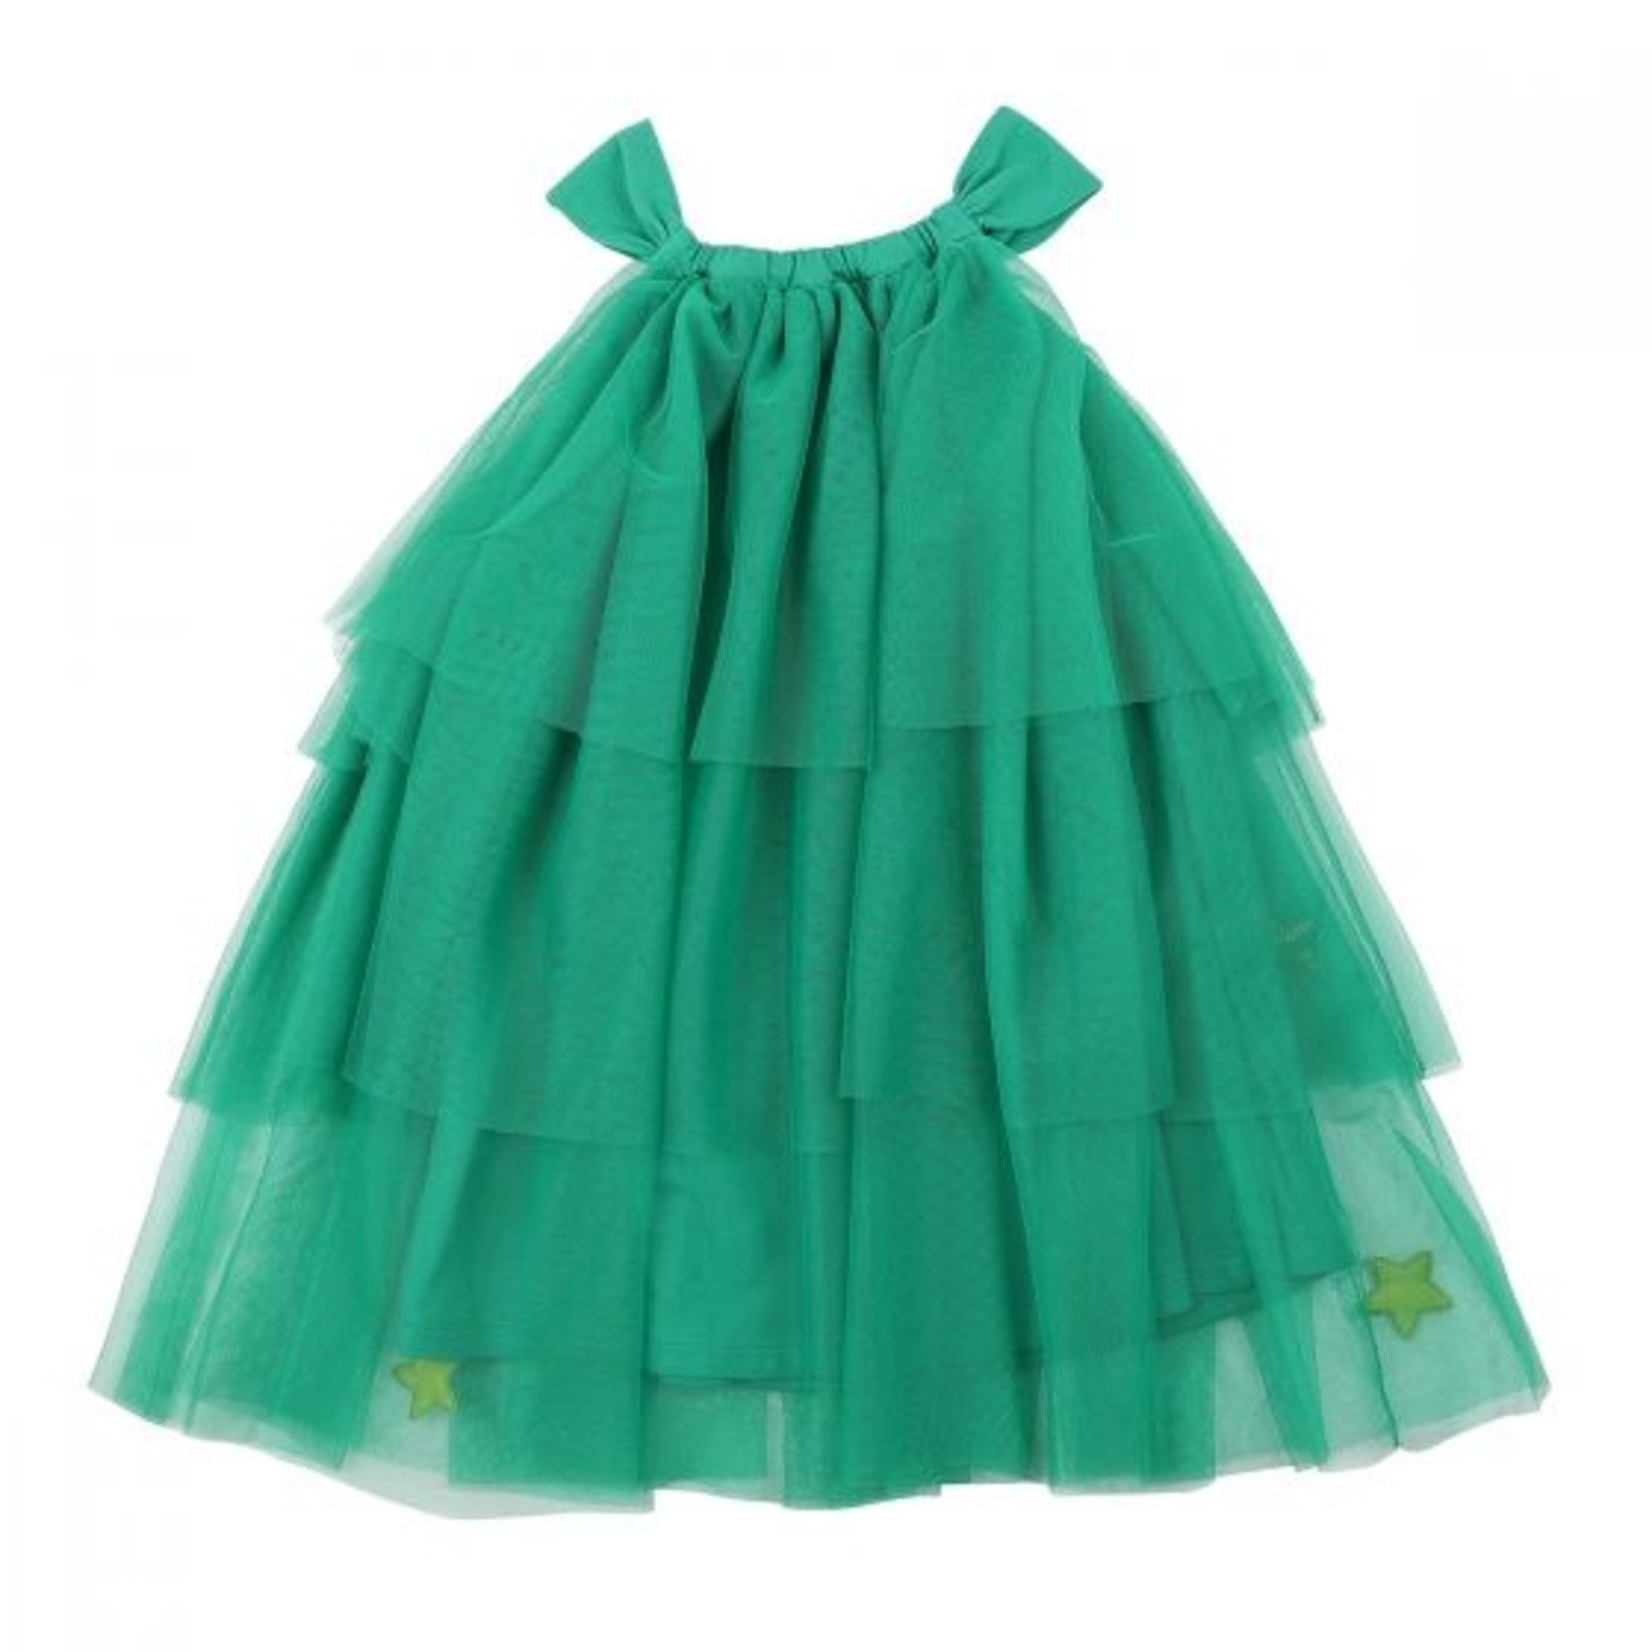 Minihaha Green Xmas Tree Dress